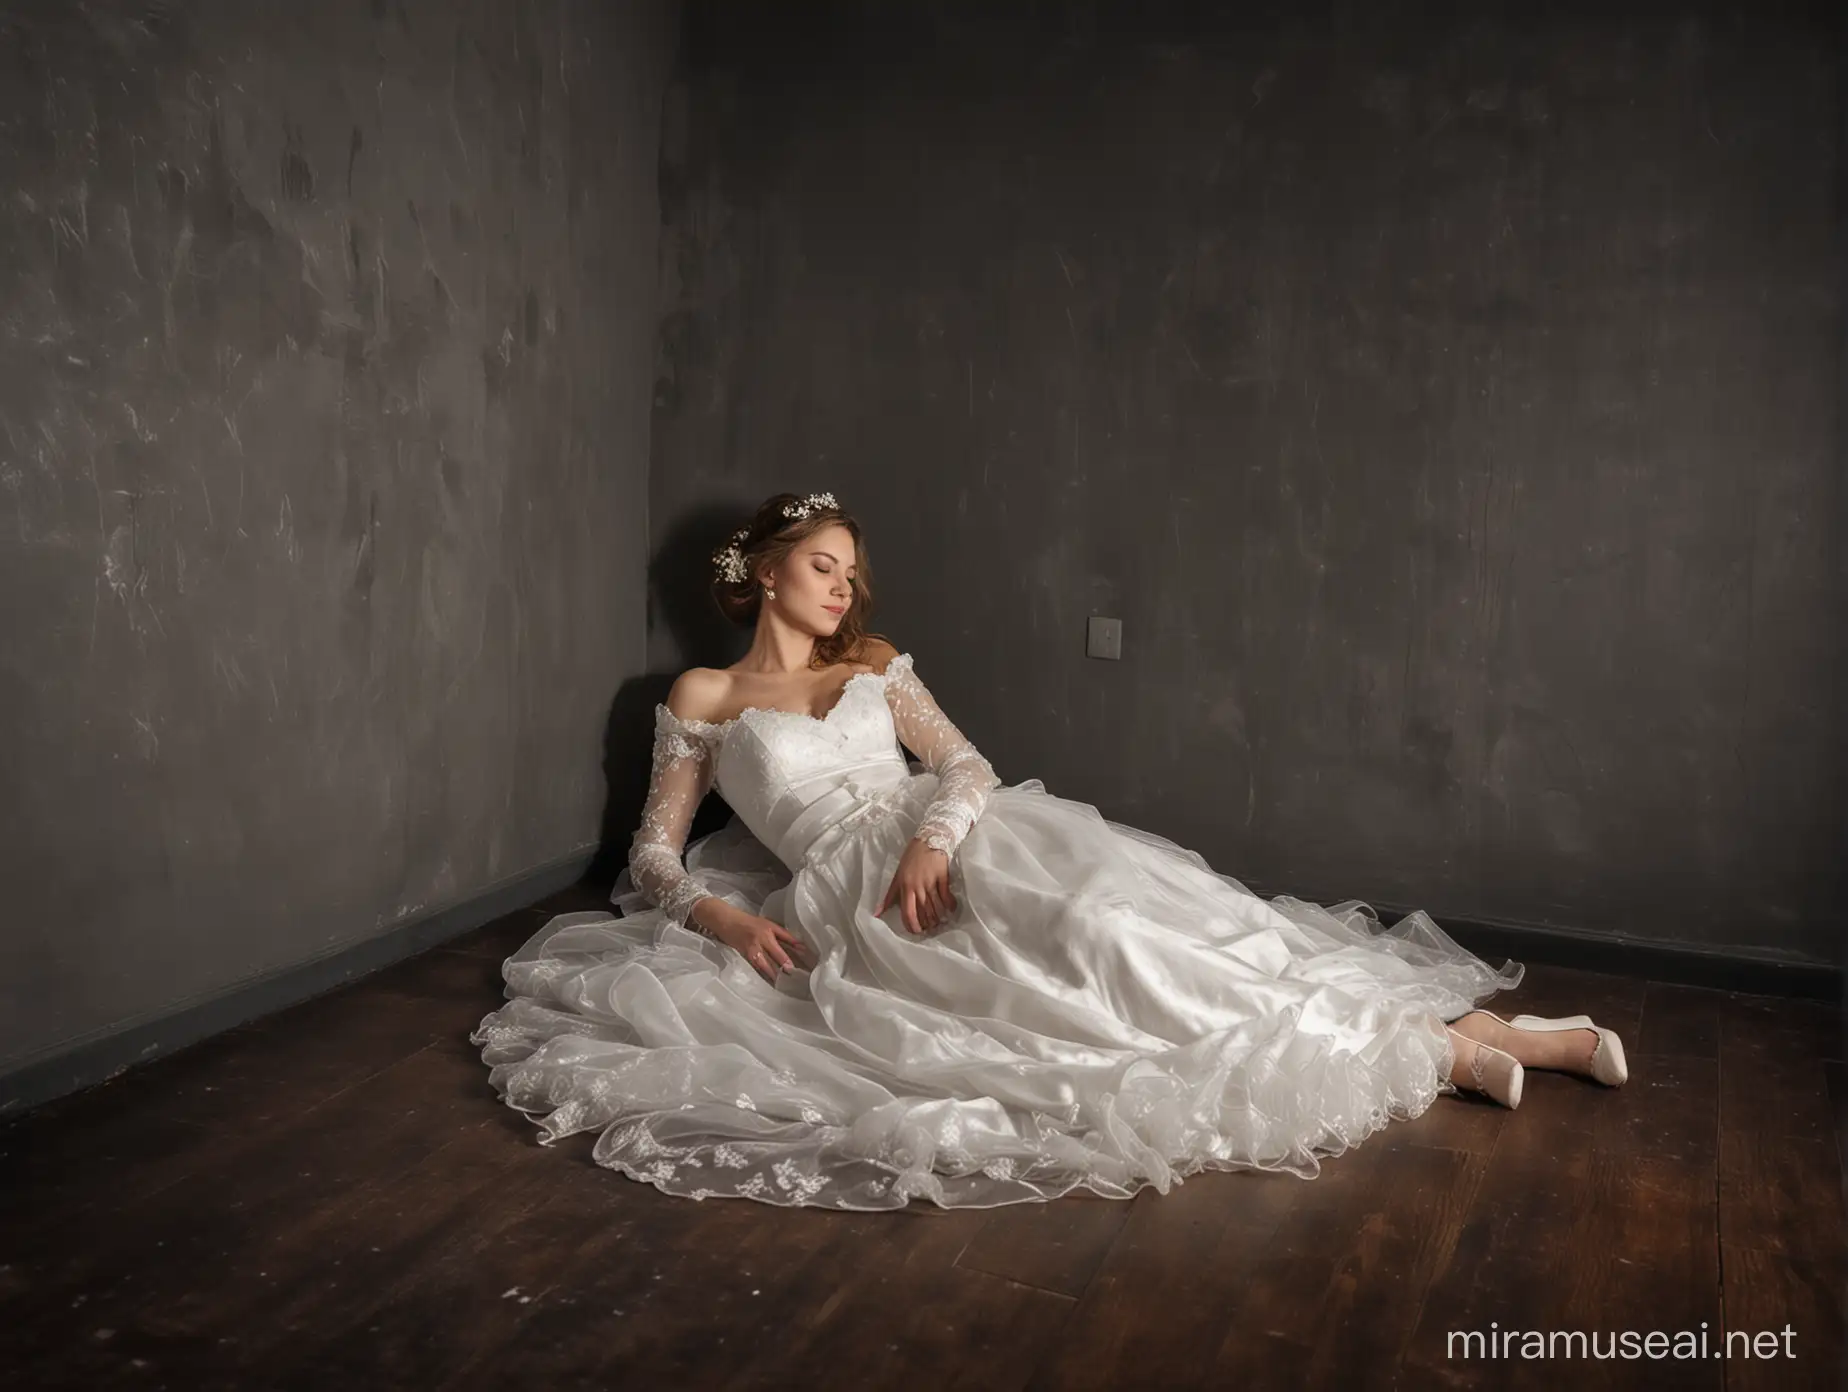 Bride Sleeping in Dimly Lit Room